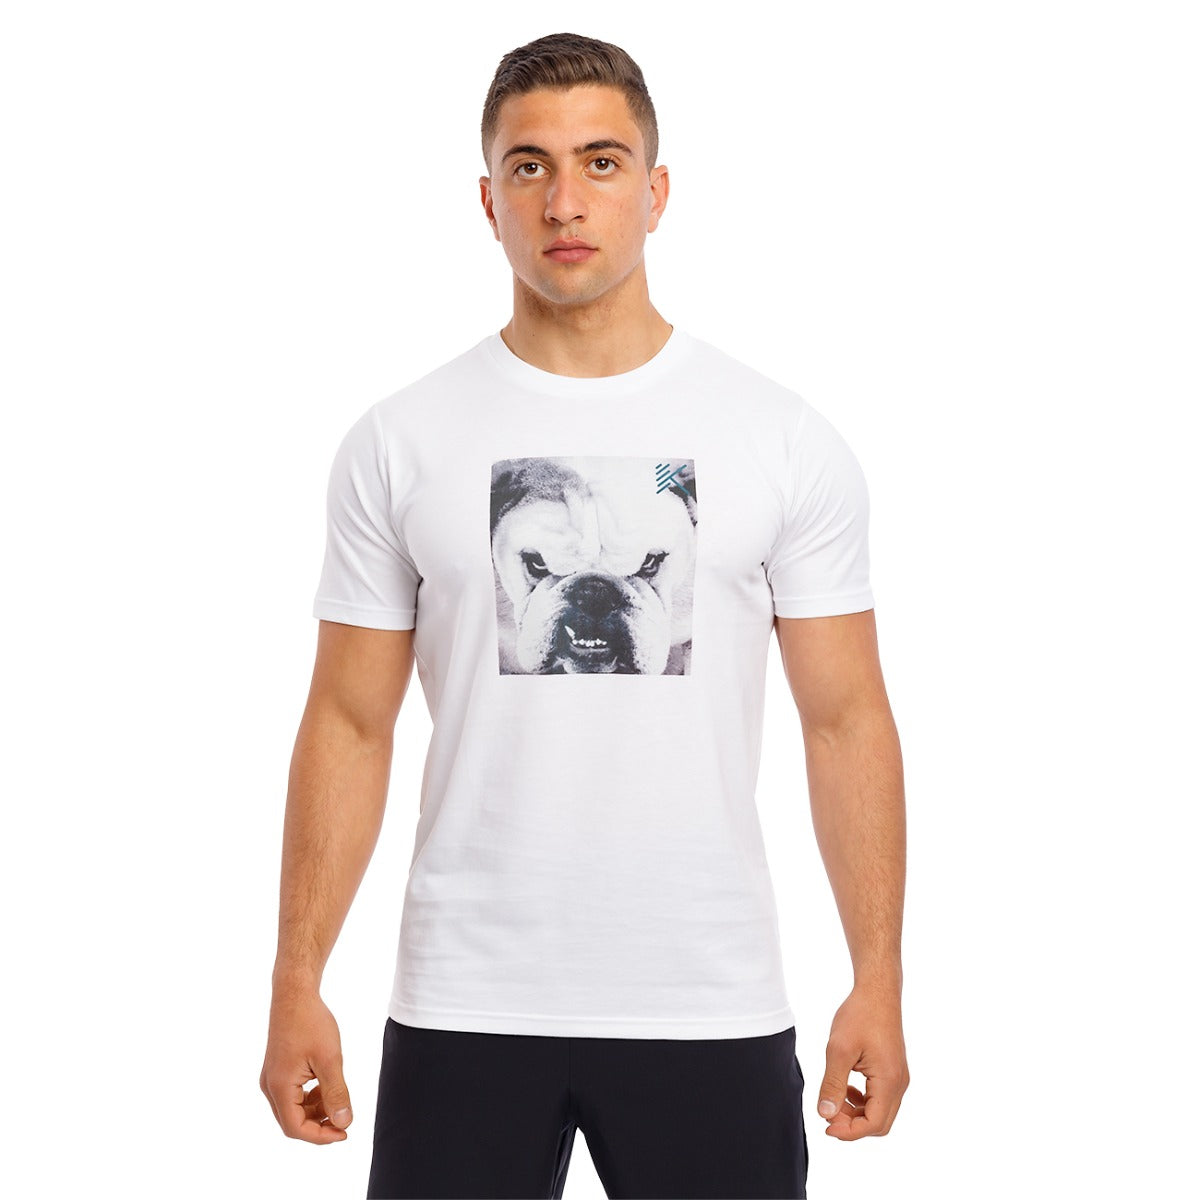 Anta SS TEE Basketball T-Shirt For Men, White